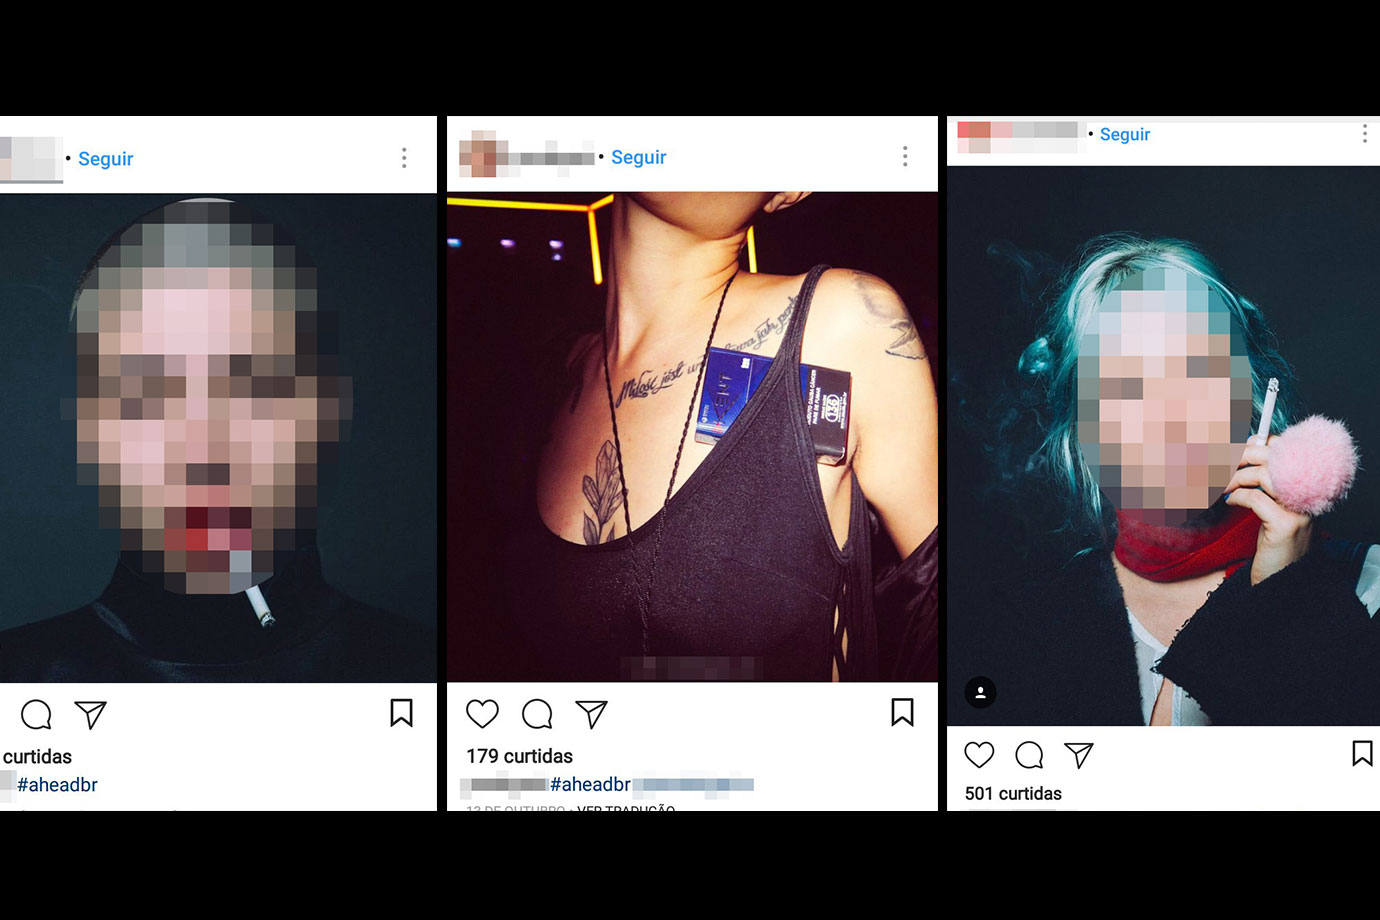 Marca de cigarros pode ter realizado publicidade disfarçada com influenciadores digitais no Instagram